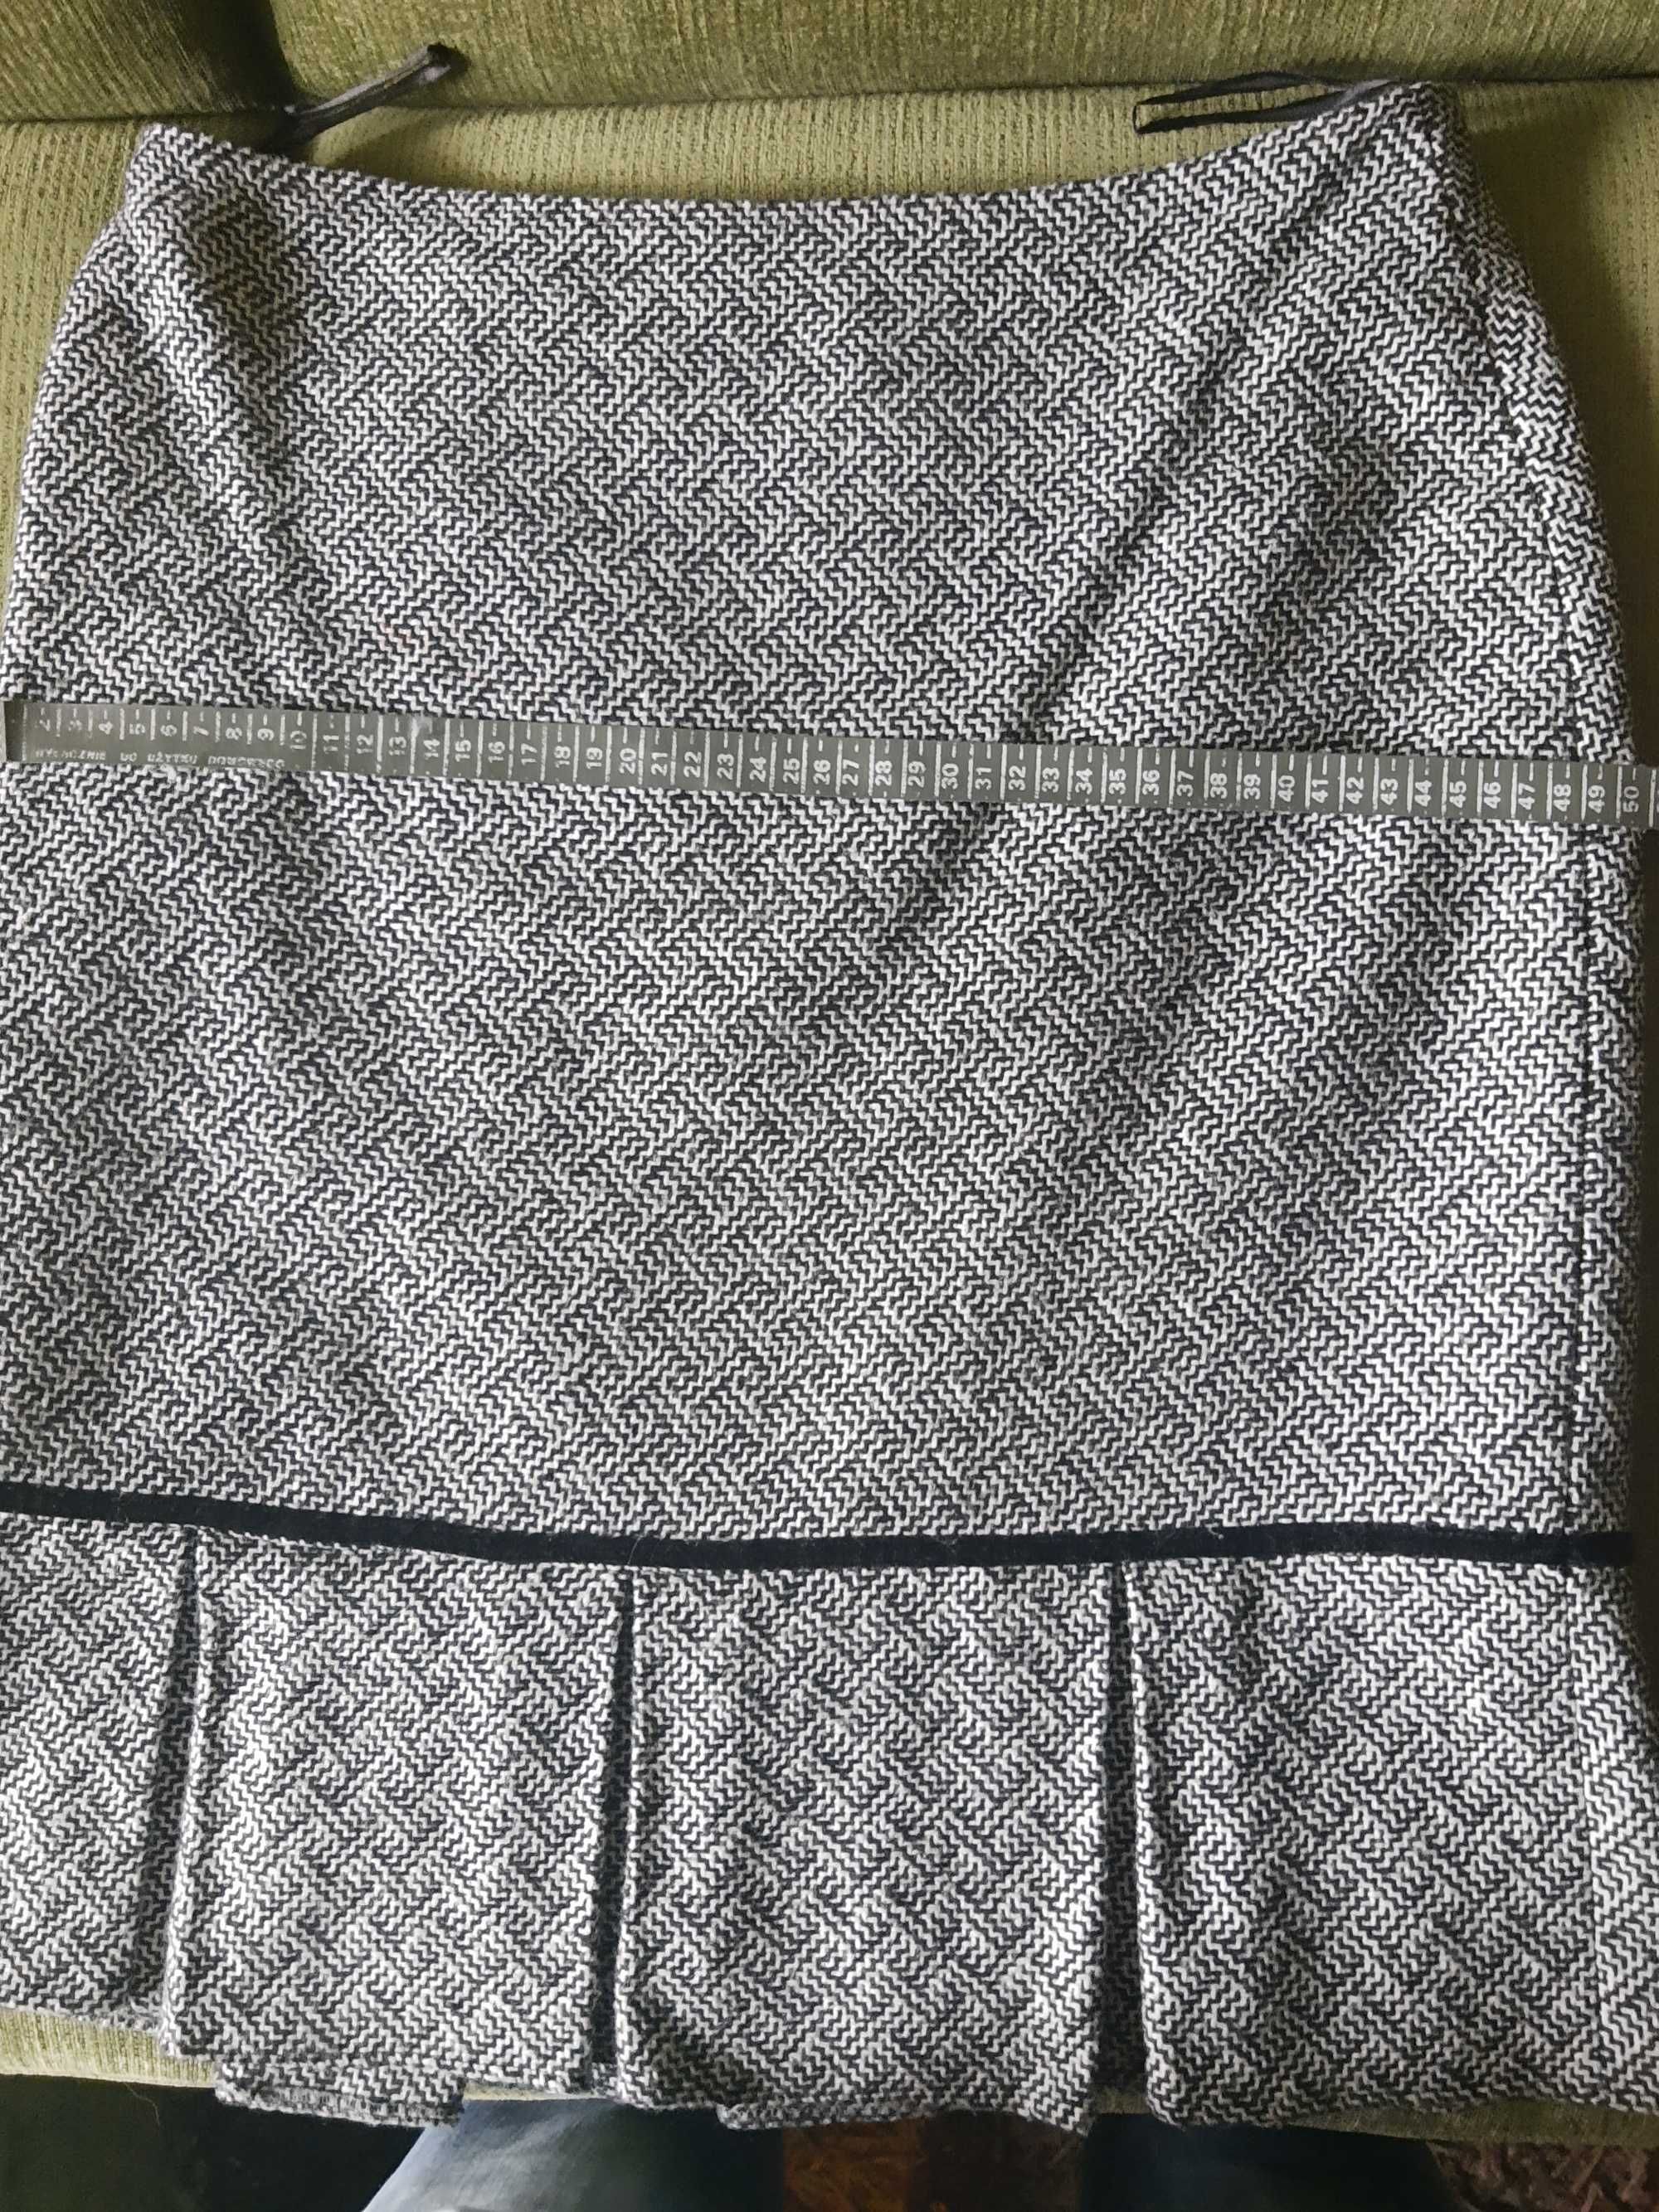 Spódnica ciepła 40-42, z podszewką, wzór jodełka, plisy, oryg. fason